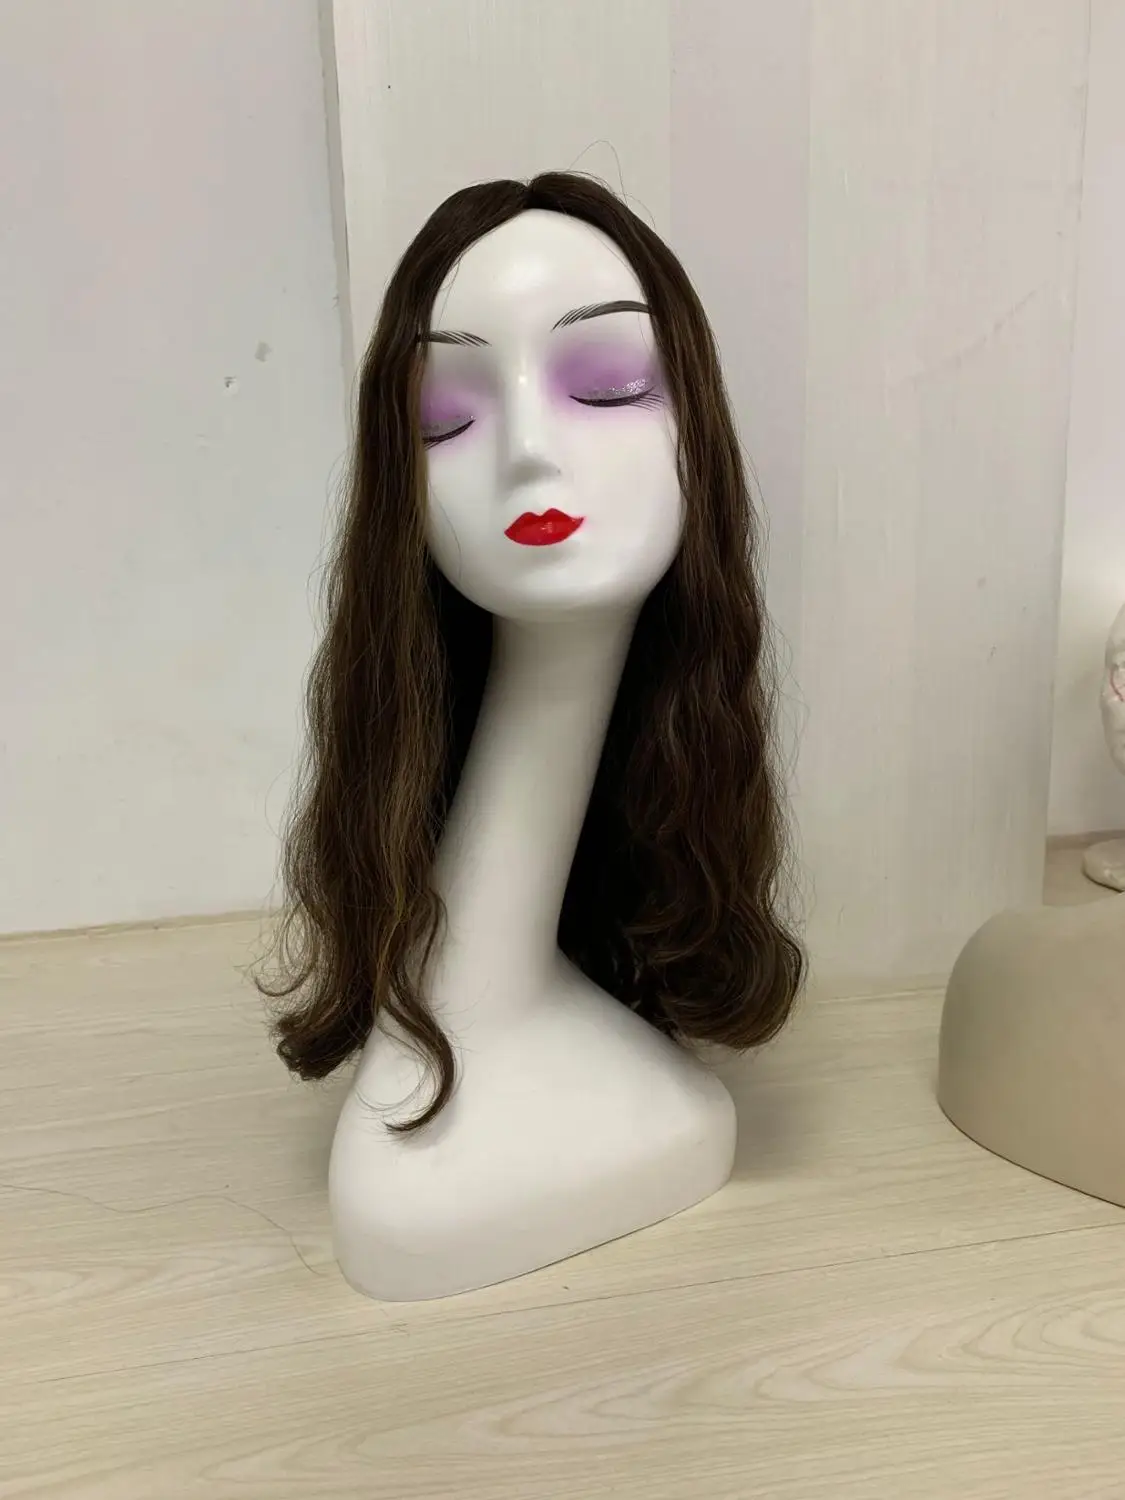 Tsingtaowigs изготовленные на заказ европейские девственные волосы необработанные волосы 16 дюймов еврейский парик лучшие Sheitels парики